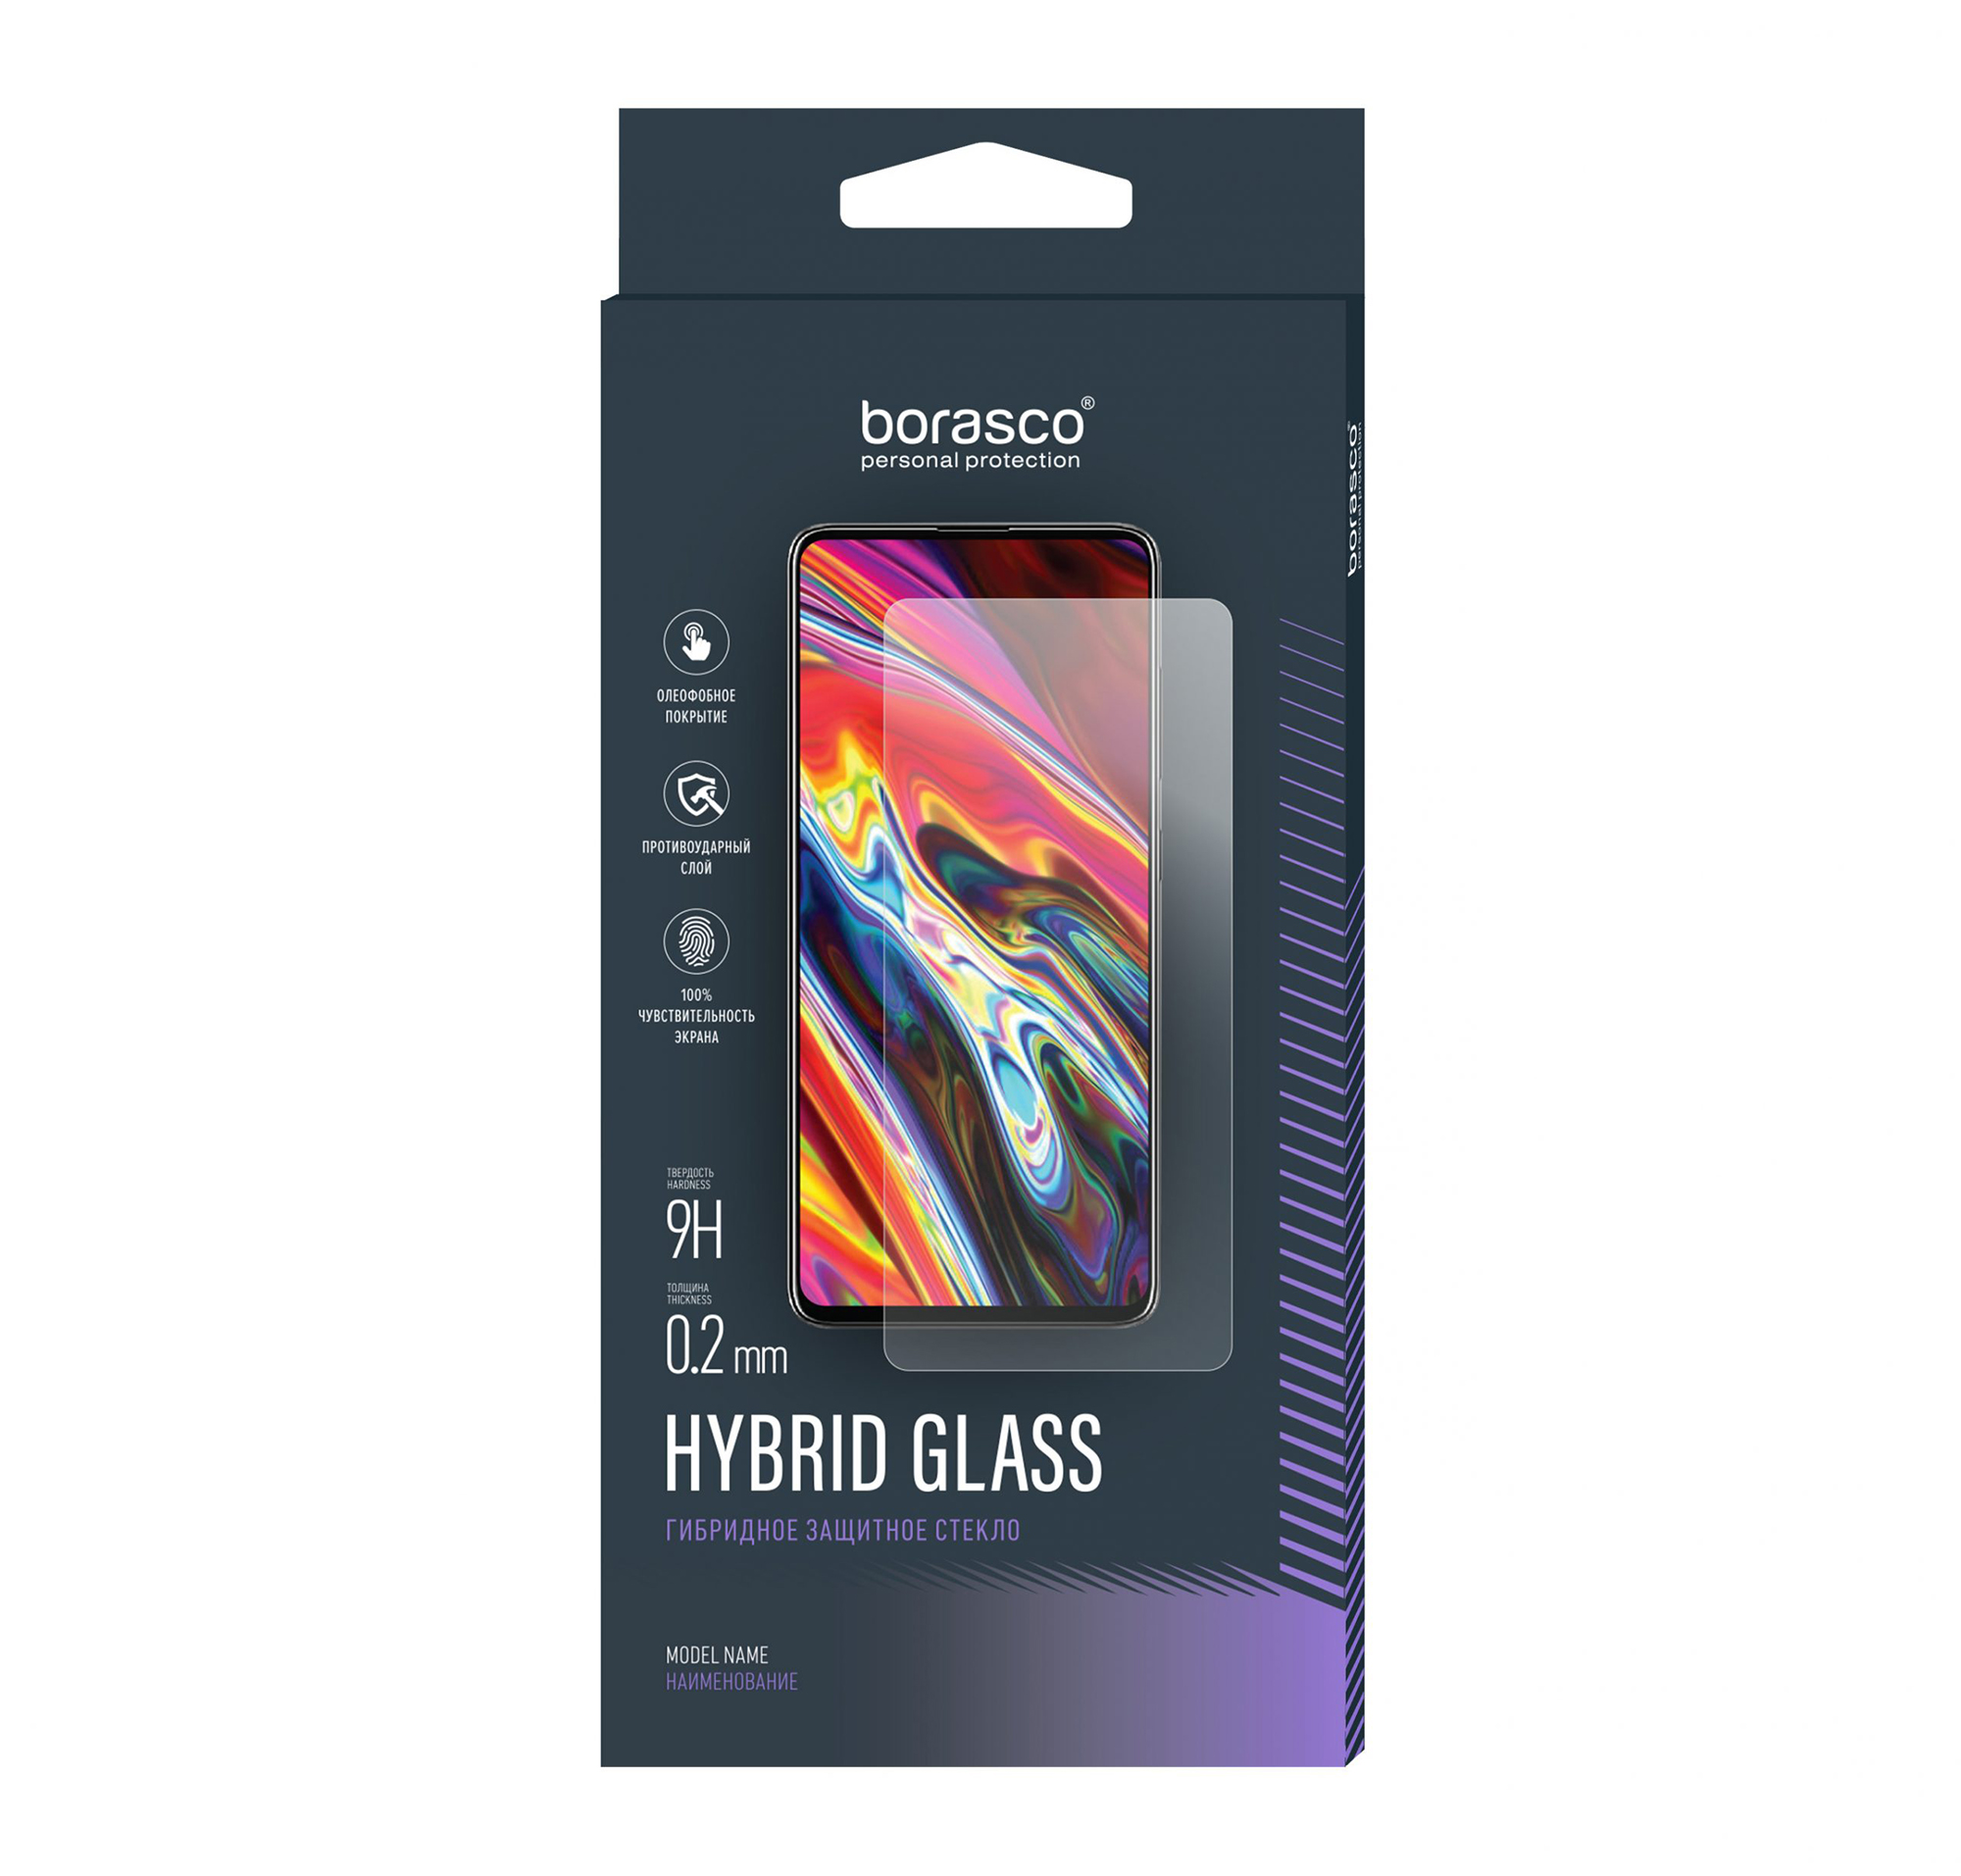 Защитное стекло Hybrid Glass для Huawei Nova 5T/ Honor 20/ 20 Pro аккумулятор fixiton hb386589ecw hb386590ecw hb386589cw для honor 8x jsn l21 20 yal l21 play cor l29 huawei mate 20 lite nova 3 par lx1